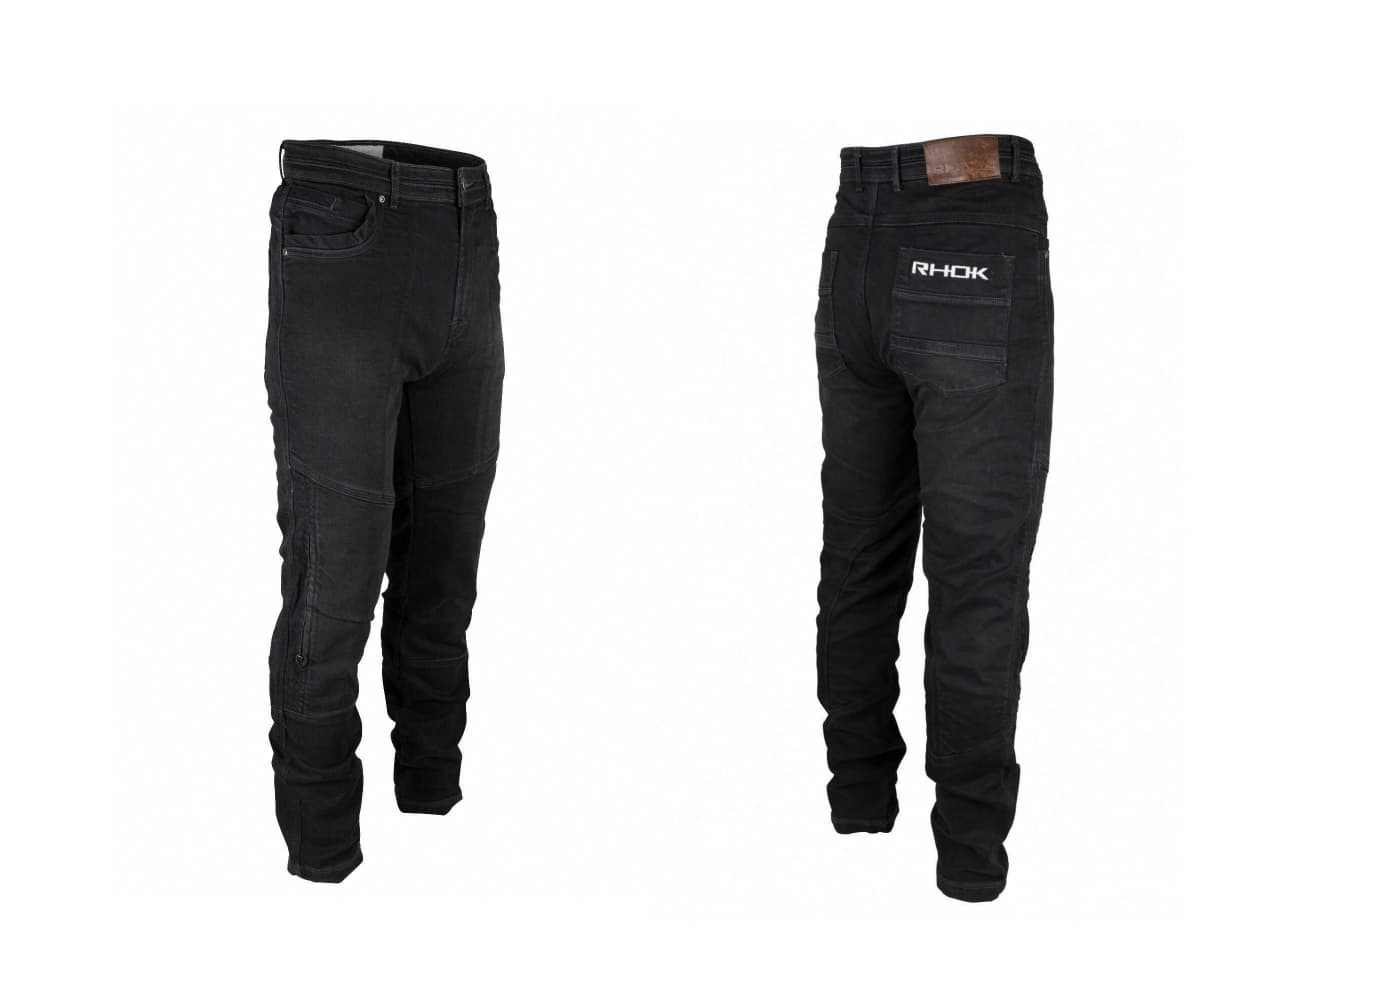 Gen3 RHOK jeans in black